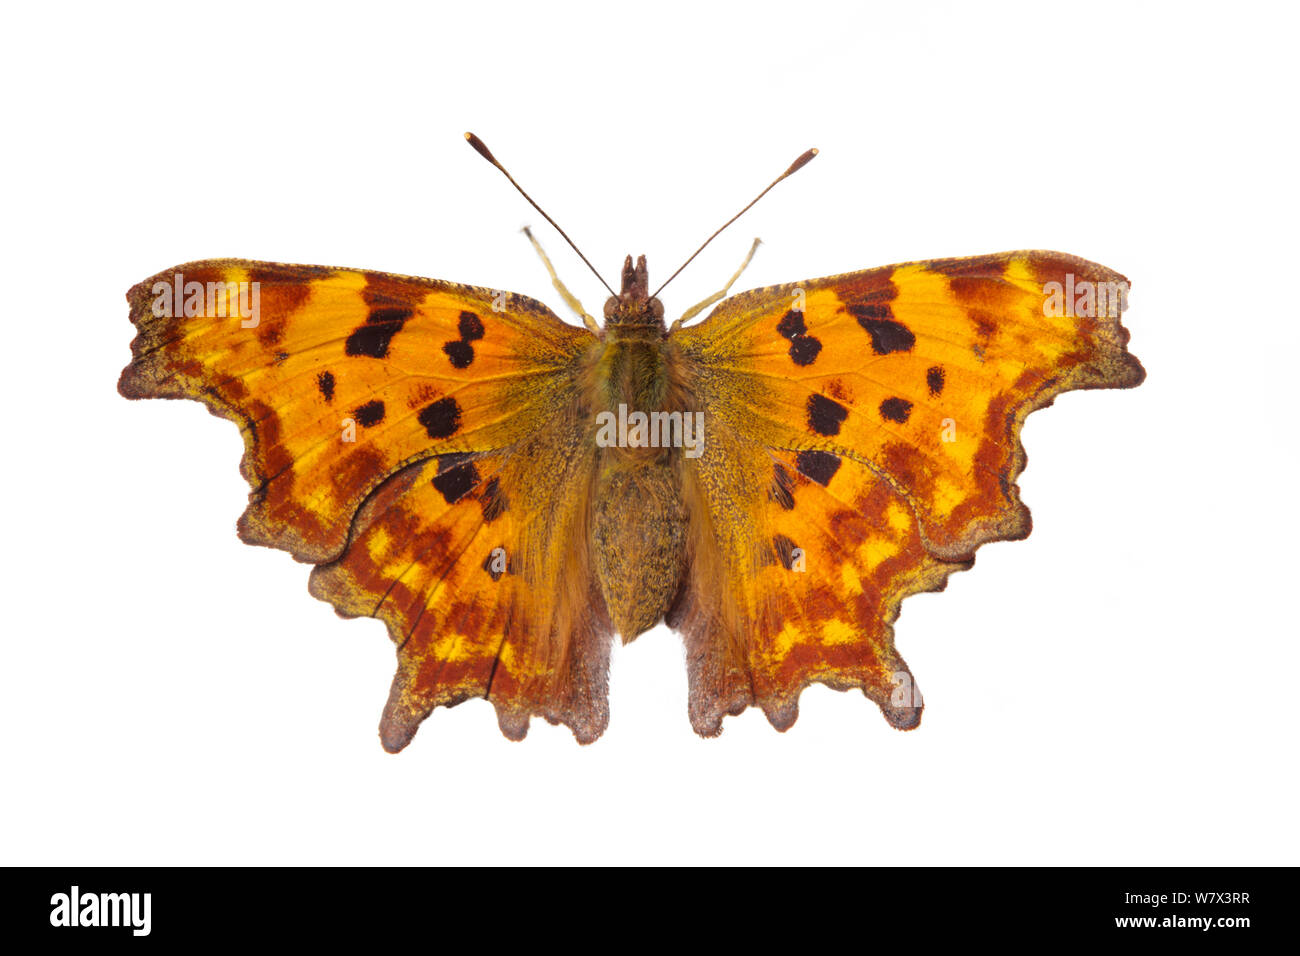 Comma butterfly (Polygonia c-album) sur un fond blanc en studio mobiles sur le terrain. Parc national de Peak District, Derbyshire, Royaume-Uni. Septembre. Banque D'Images